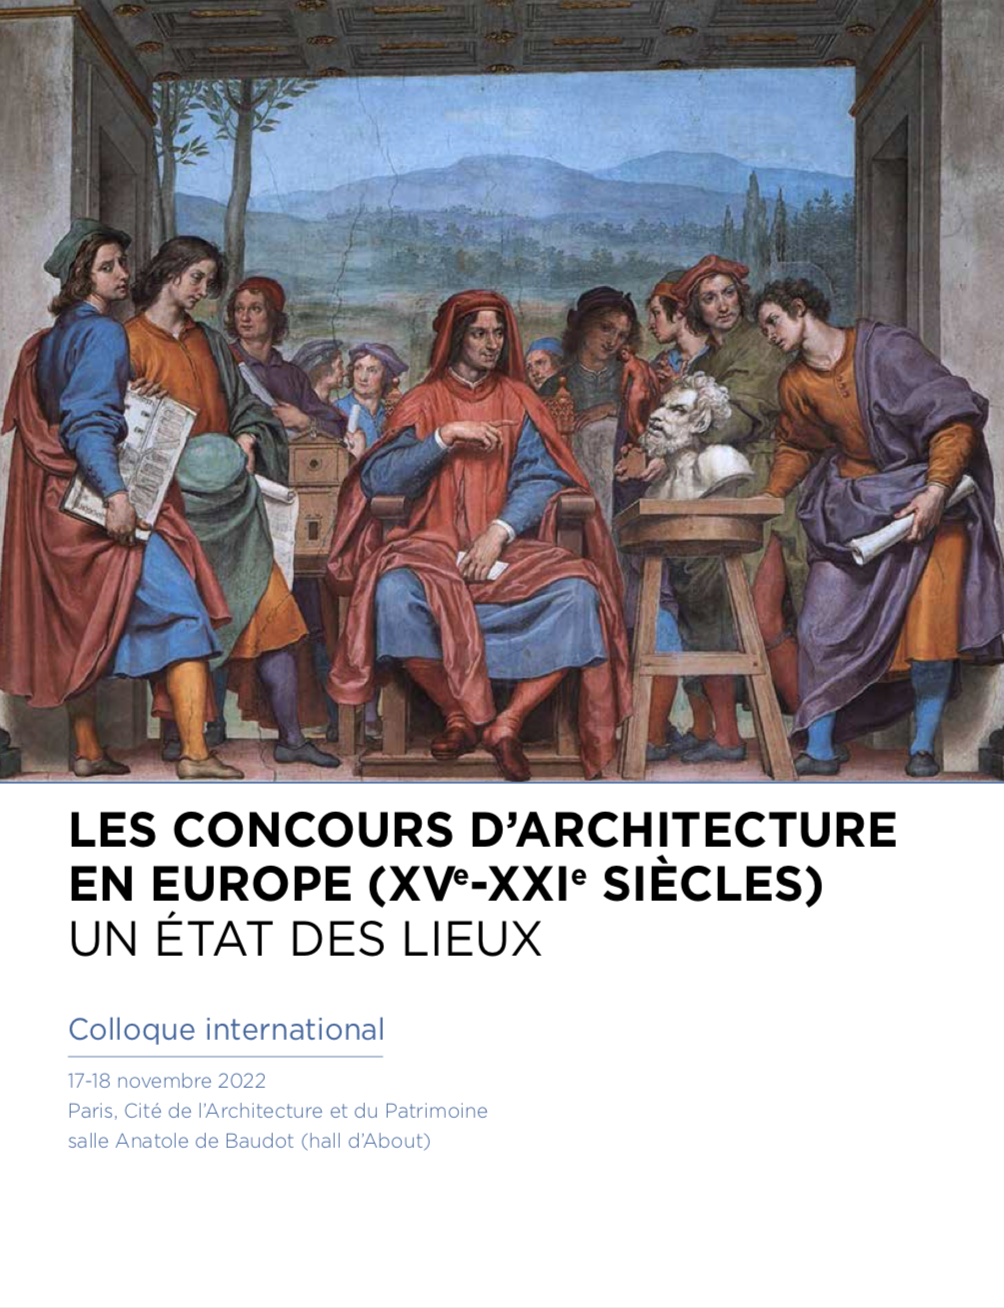 17-18/11/22 - Colloque international "Les concours d'architecture en Europe (XVe XXIe siècles)"